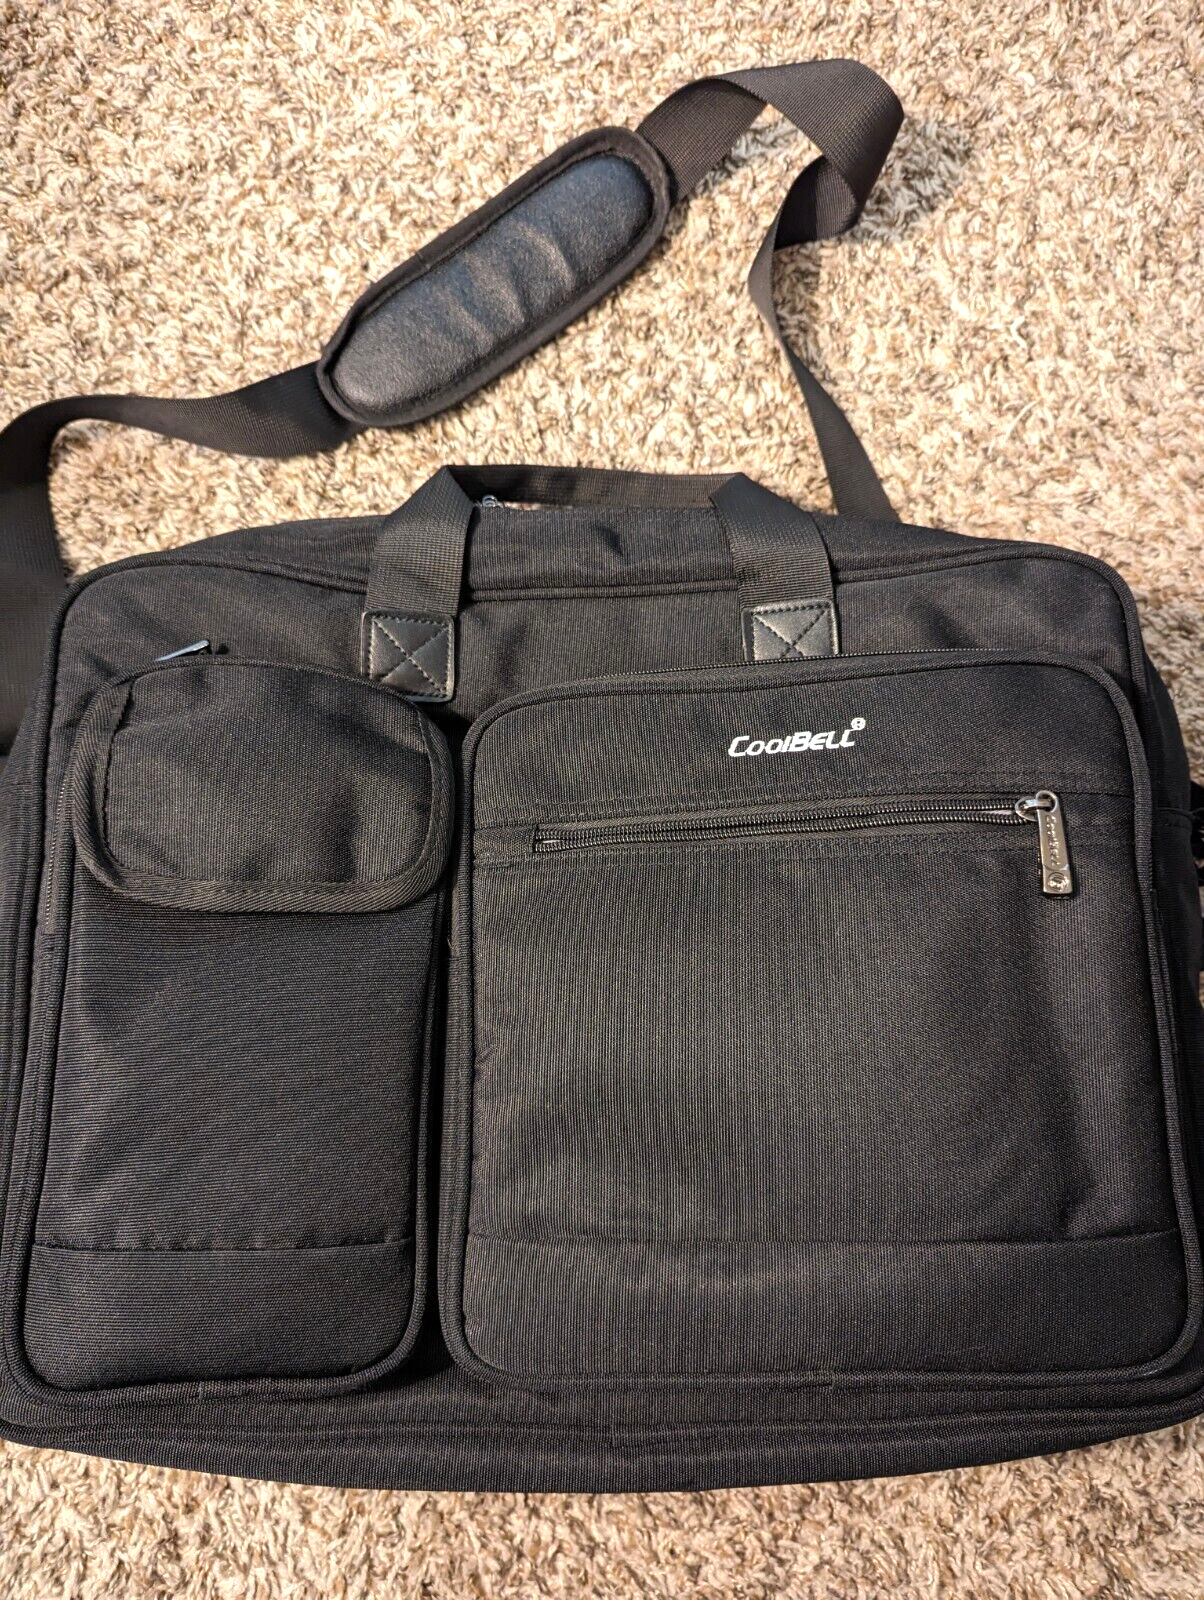 CoolBELL 17.3 Inch Laptop Briefcase Protective Messenger Bag Nylon Shoulder Bag